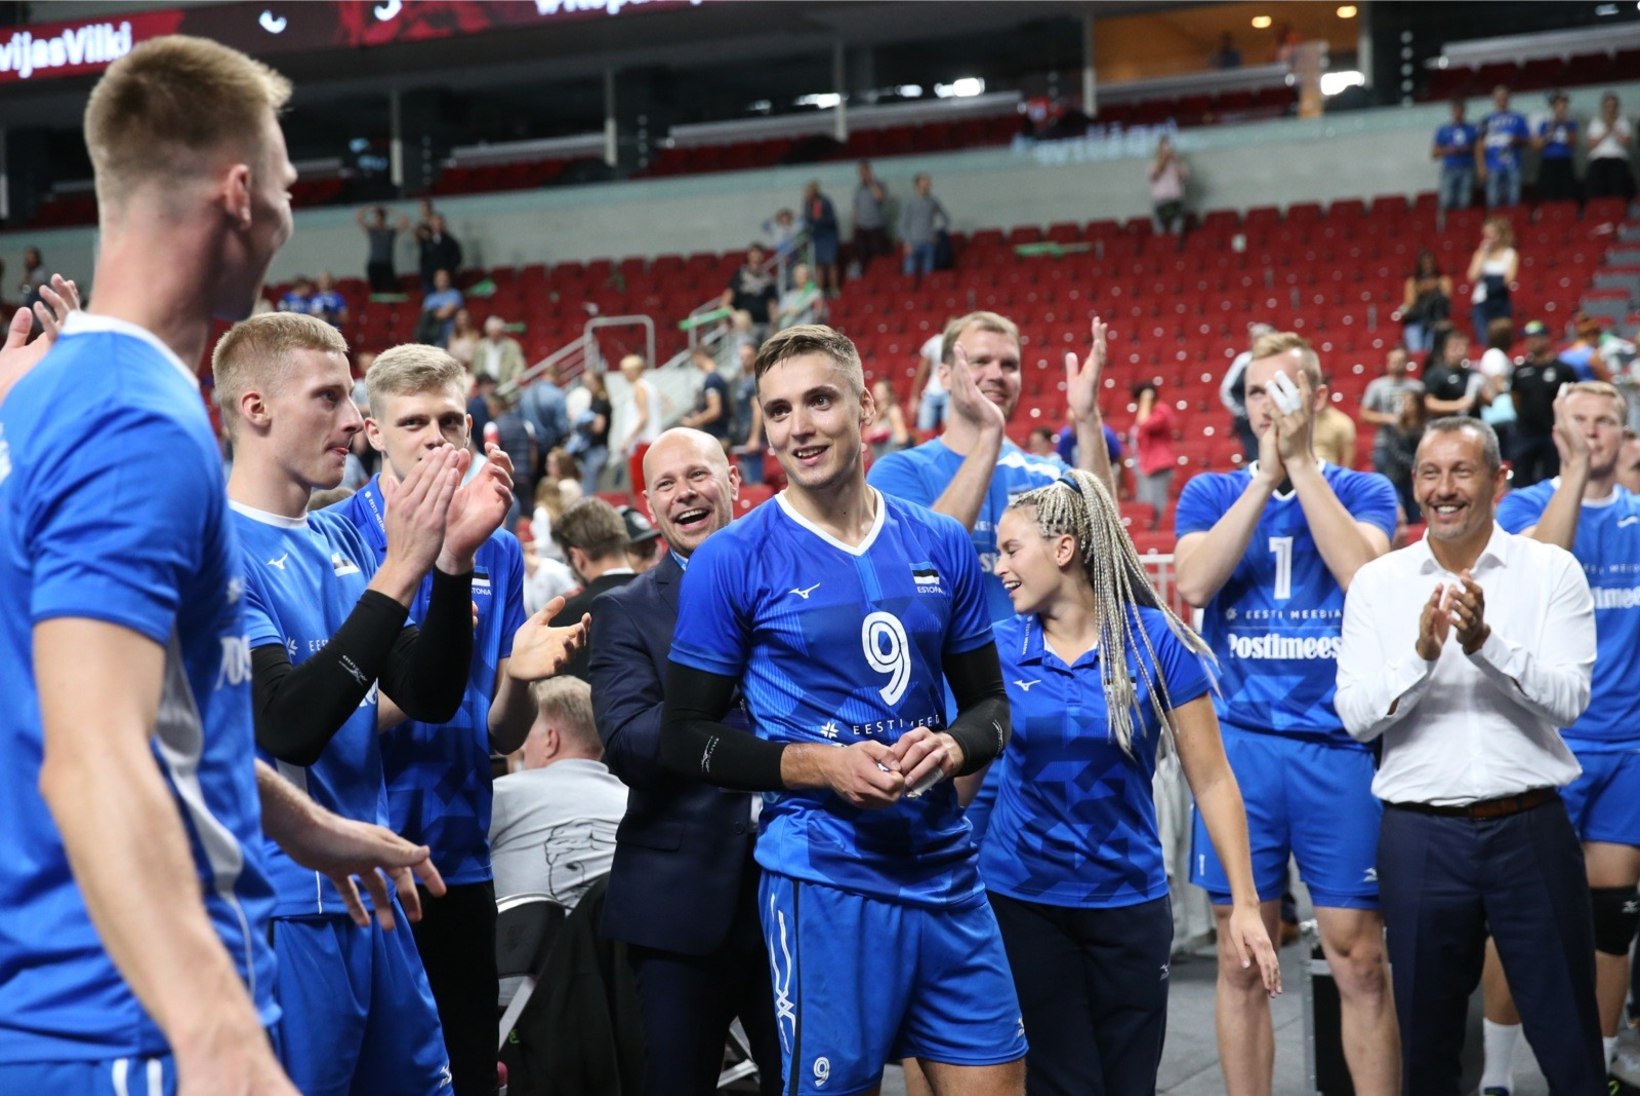 GALERII | EI AITA KA AVO! Eesti võrkpallikoondis seljatas valiksarja avamängus Läti